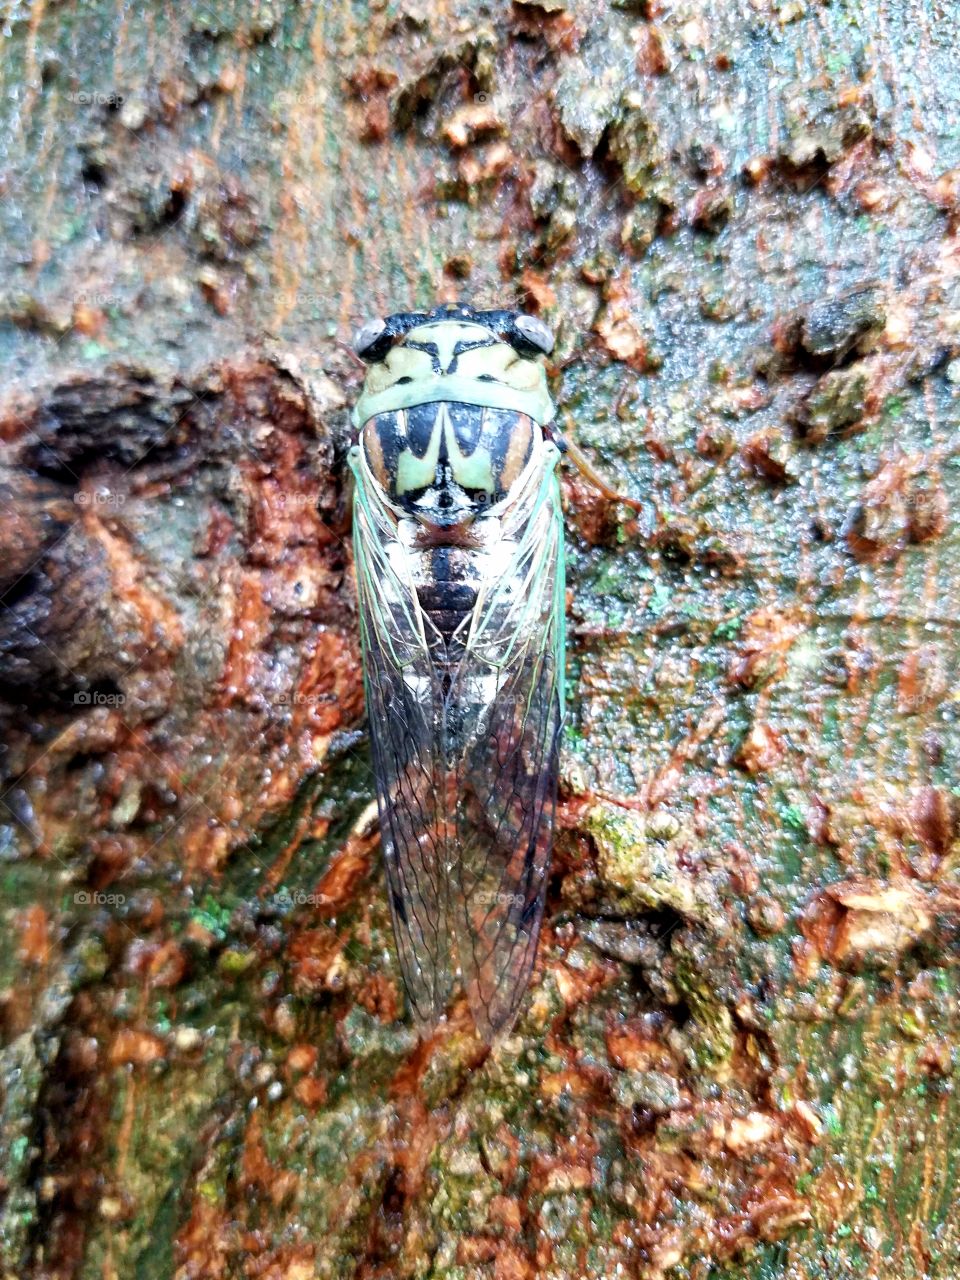 Loving this Cicada